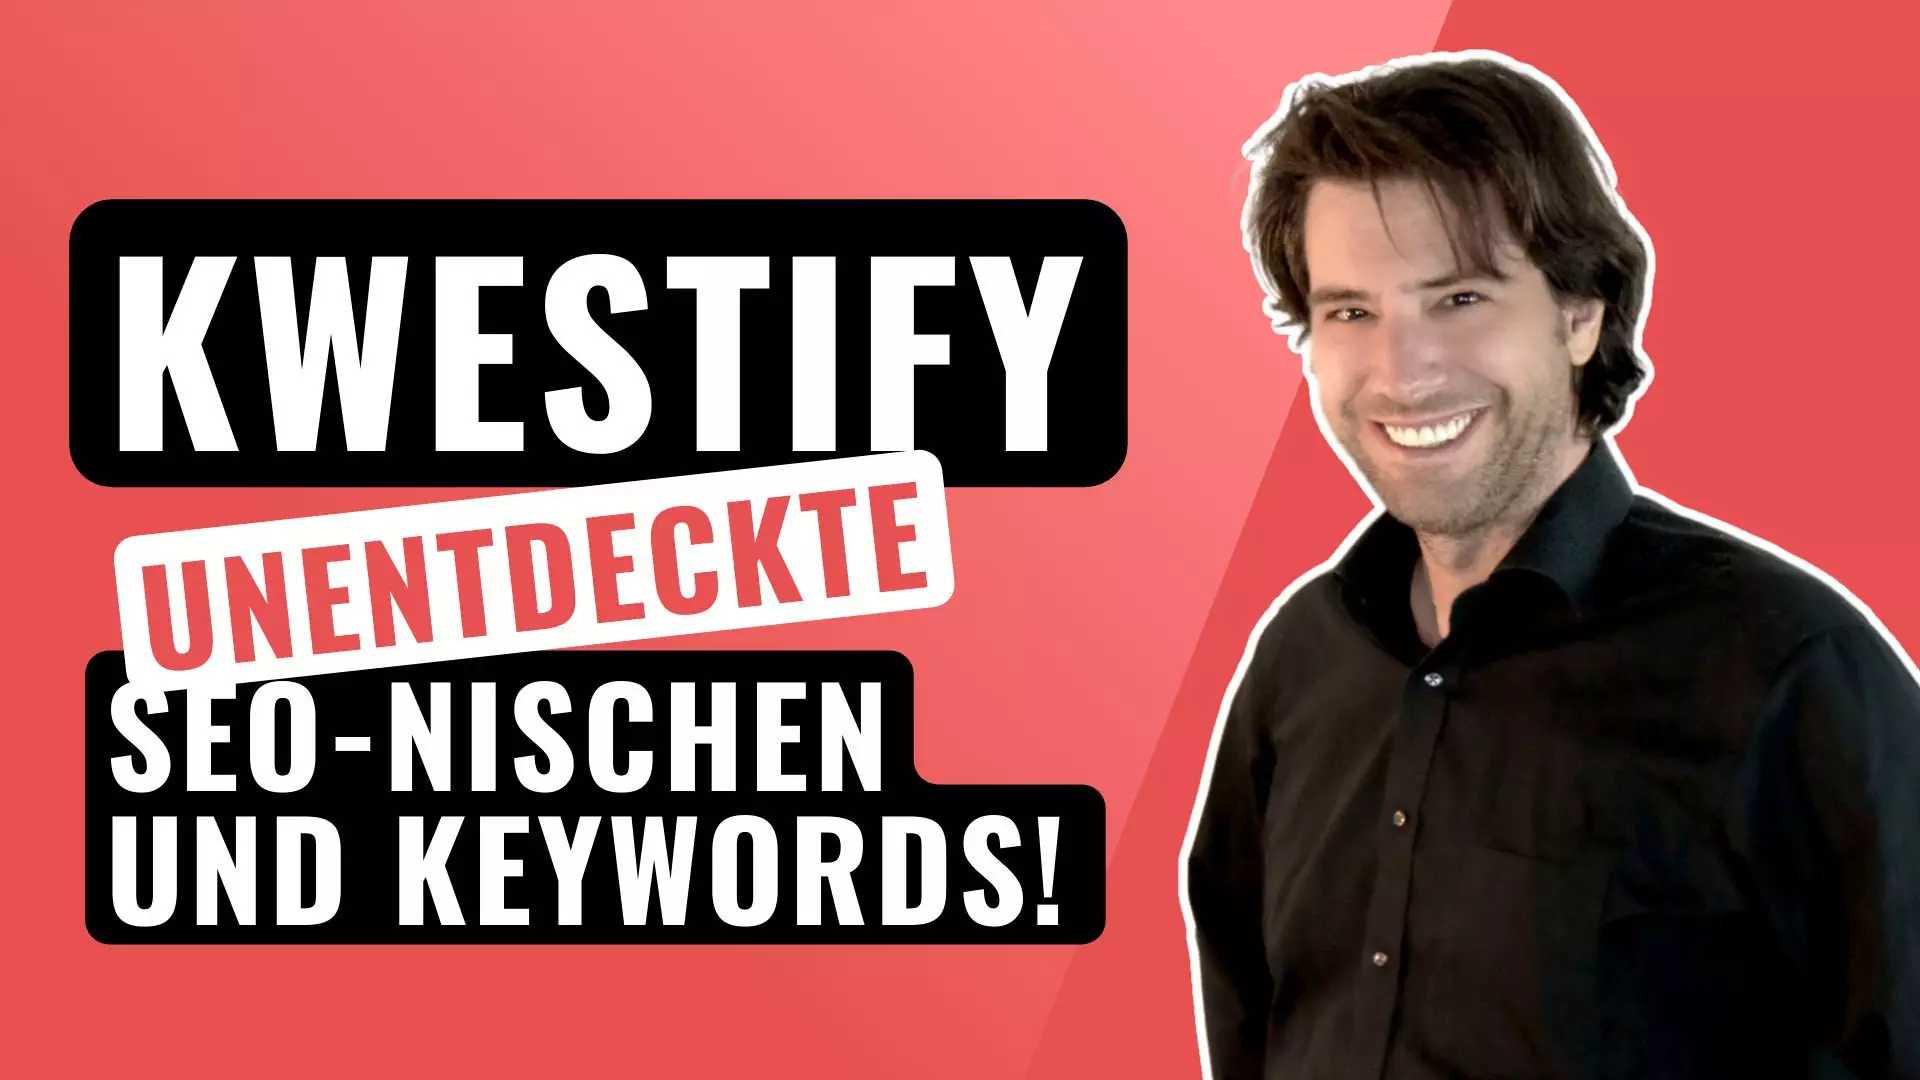 Kwestify Review | Nische analysieren, SEO Keyword Recherche, UNENTDECKTE Ideen cover